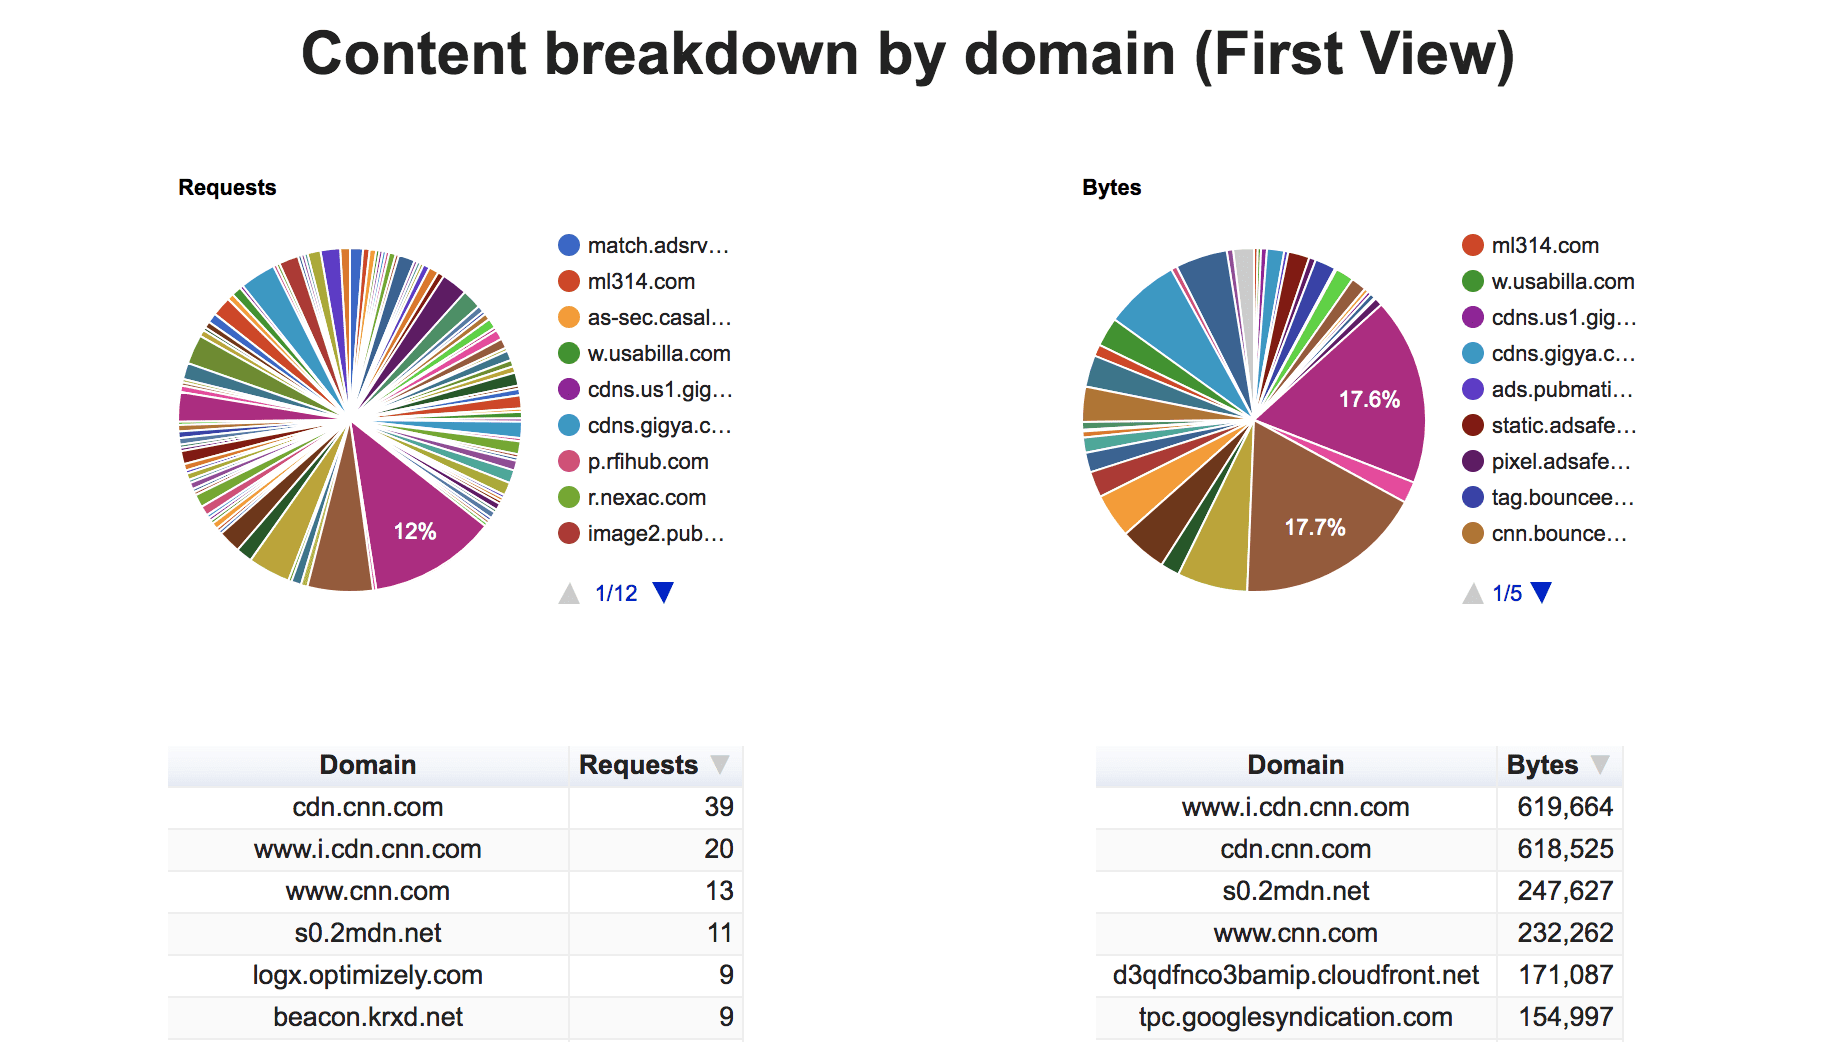 Es el desglose de contenido por dominio (primera vista).
Muestra el porcentaje de solicitudes y bytes para cada servicio de terceros.